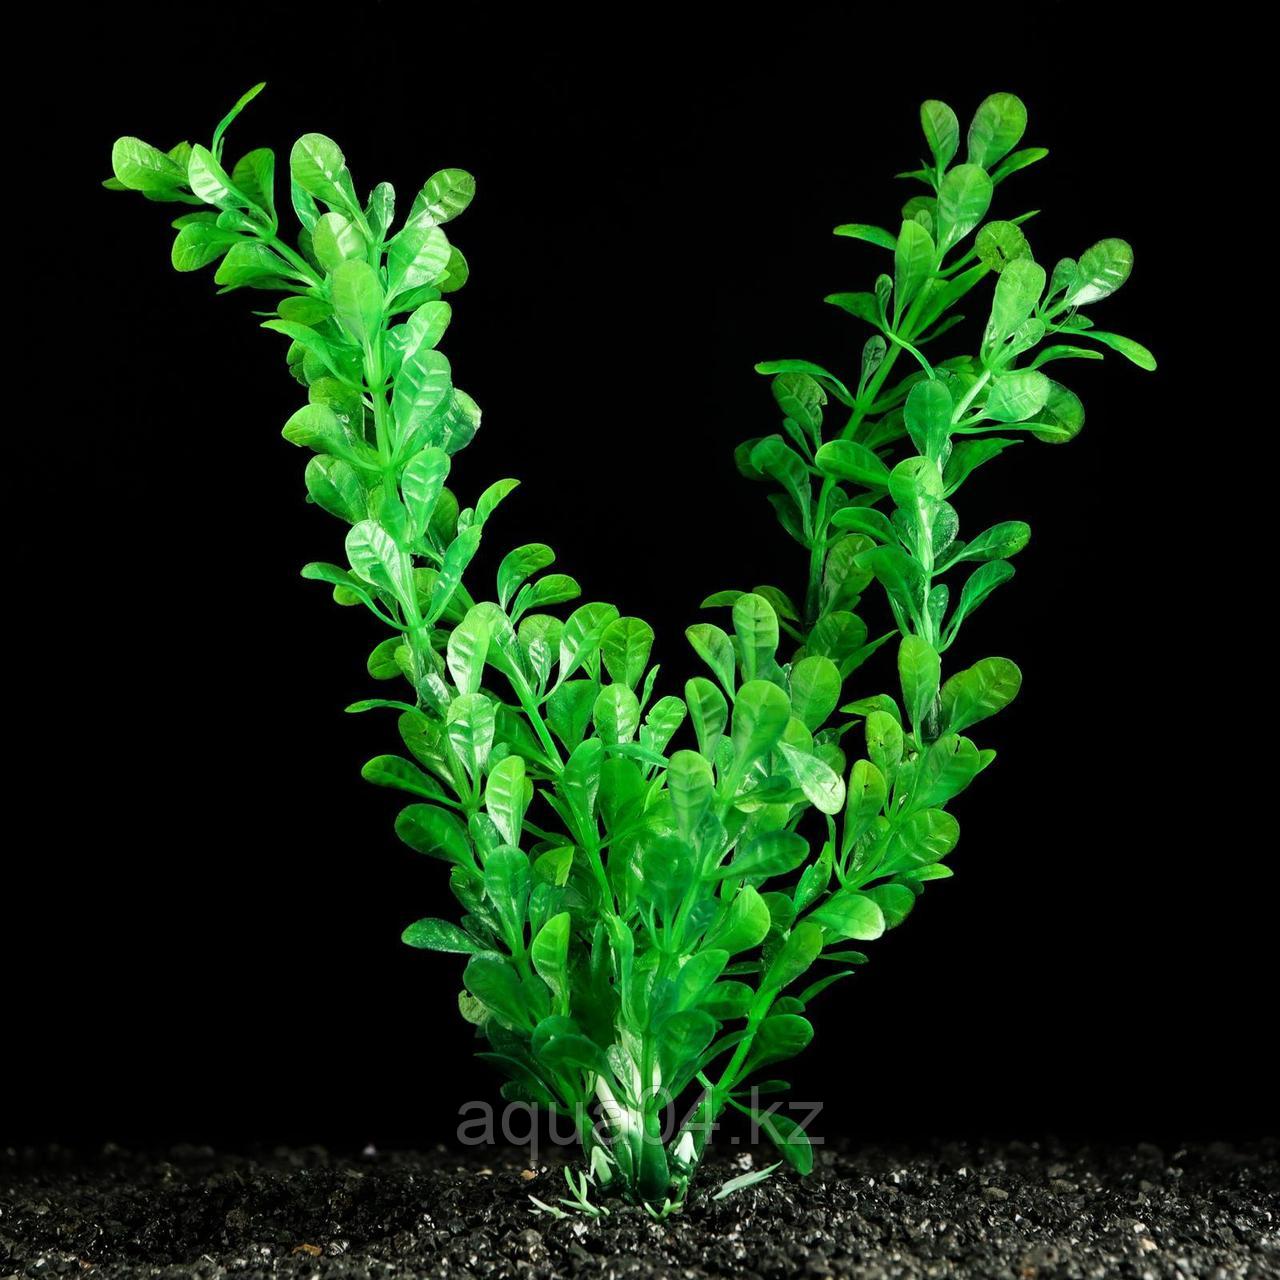 Растение искусственное аквариумное зеленое 4х 20 см